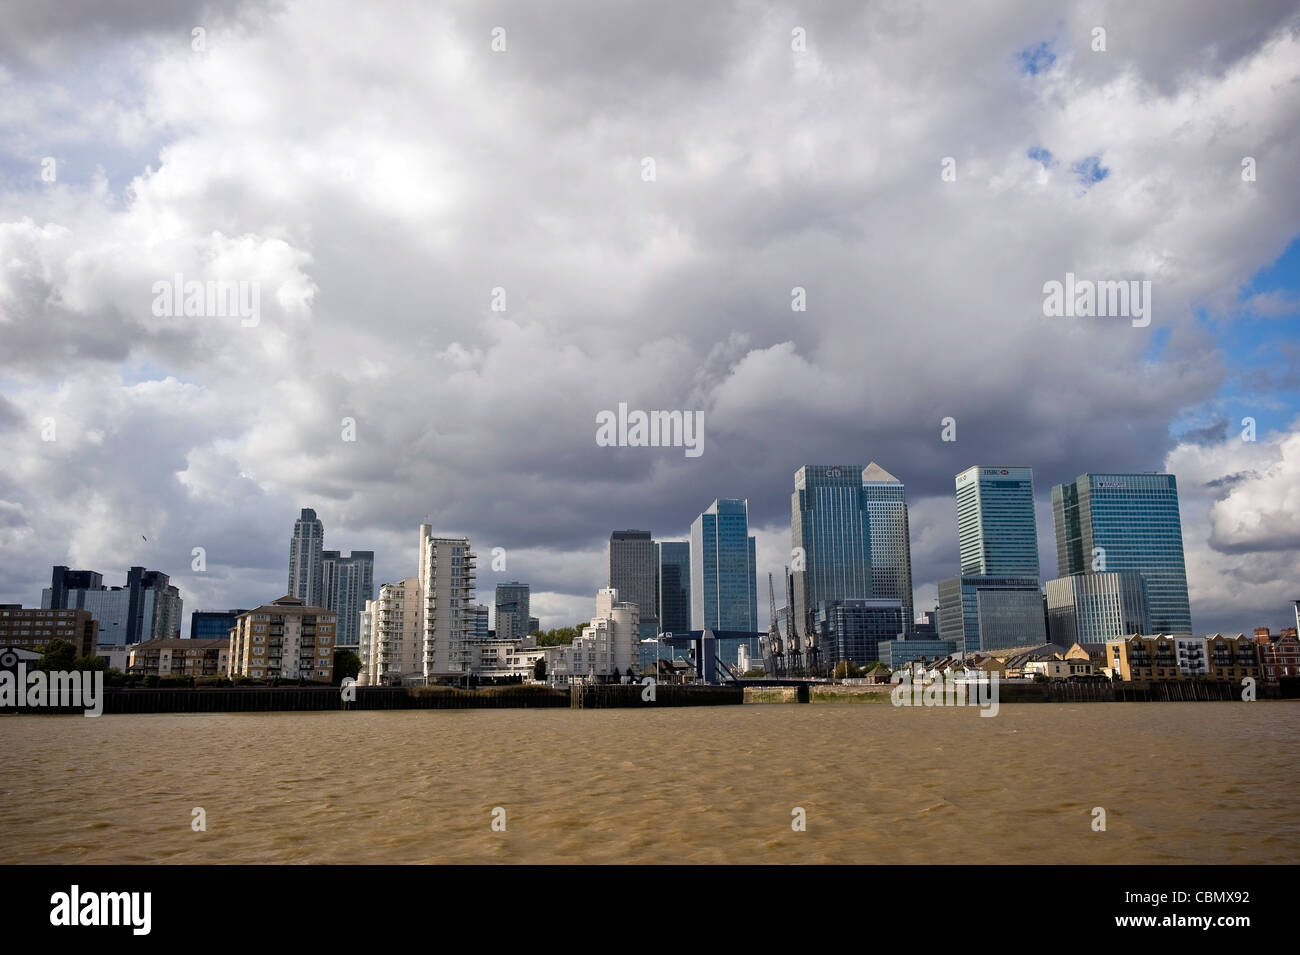 Docklands e da Canary Wharf visto dal fiume Thames, London, Regno Unito Foto Stock